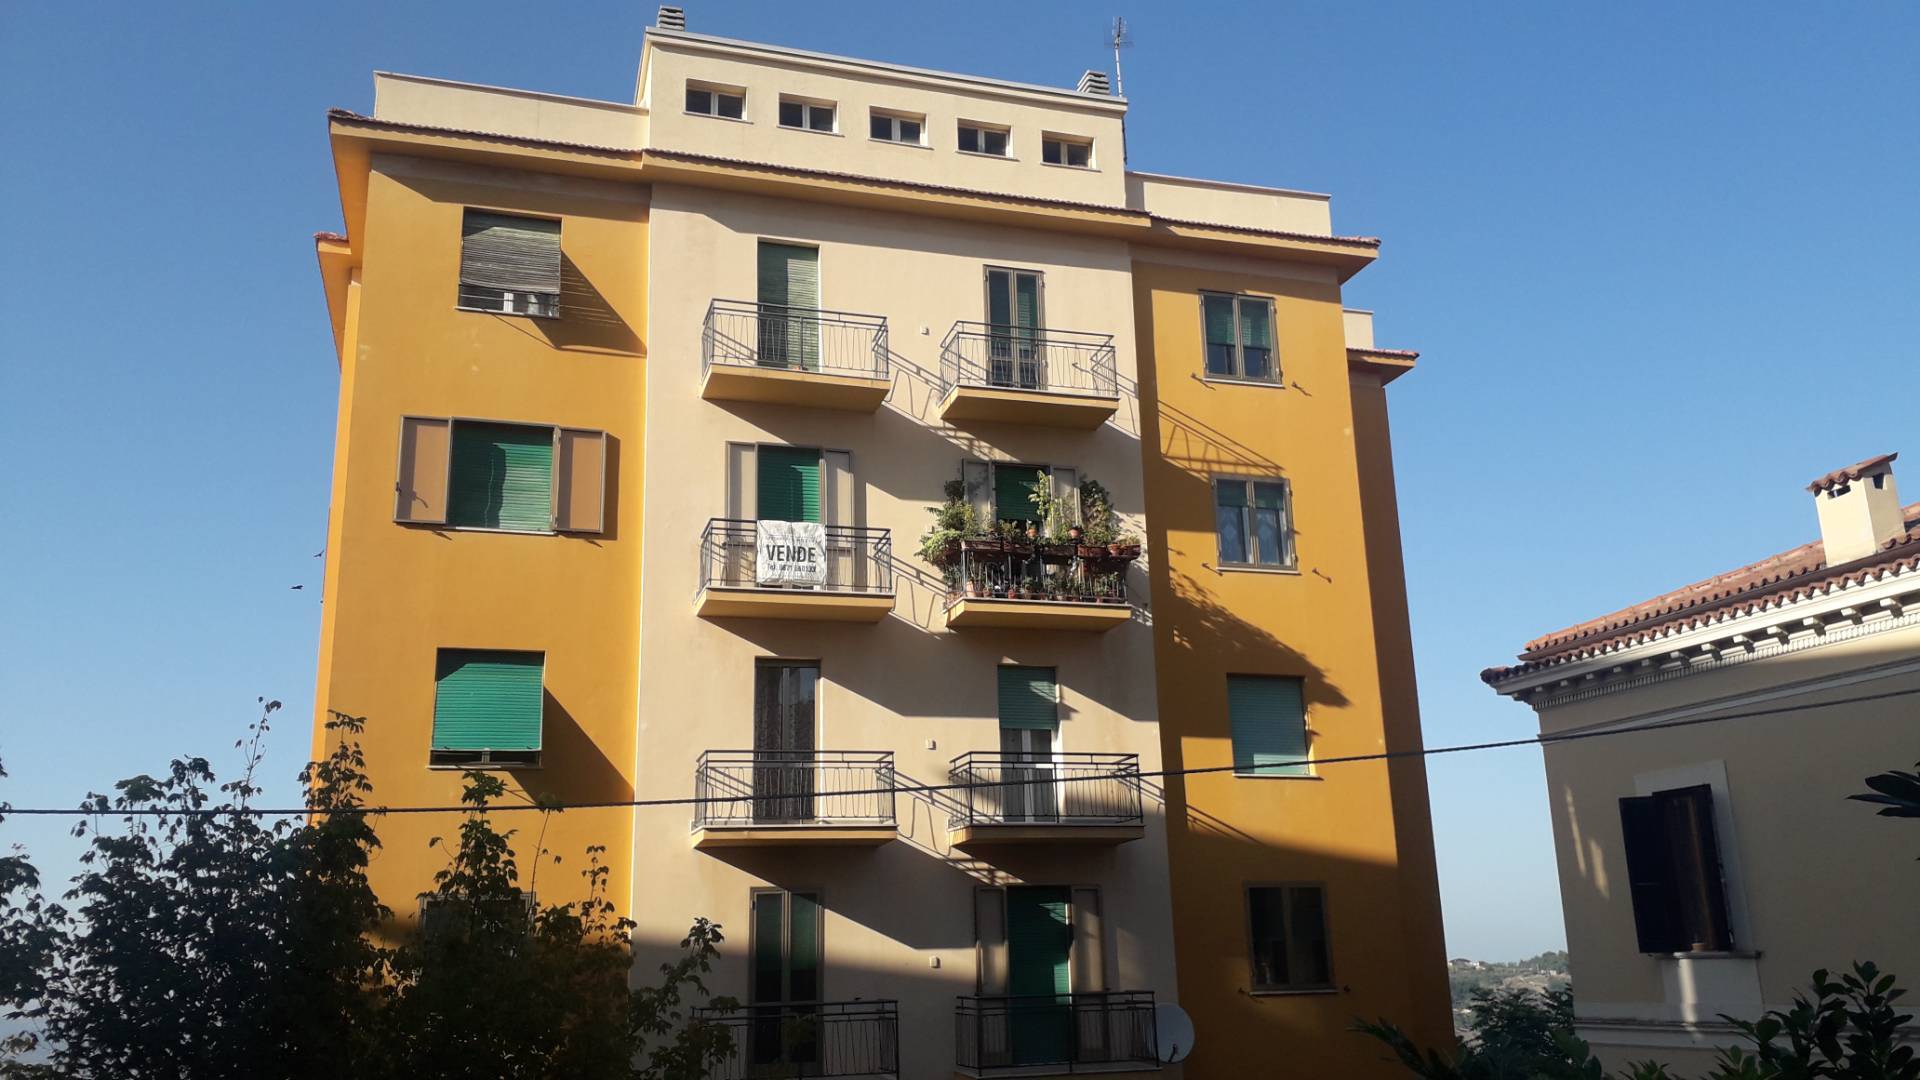 Appartamento in vendita a Chieti, 4 locali, zona Località: Centrostorico, prezzo € 70.000 | PortaleAgenzieImmobiliari.it